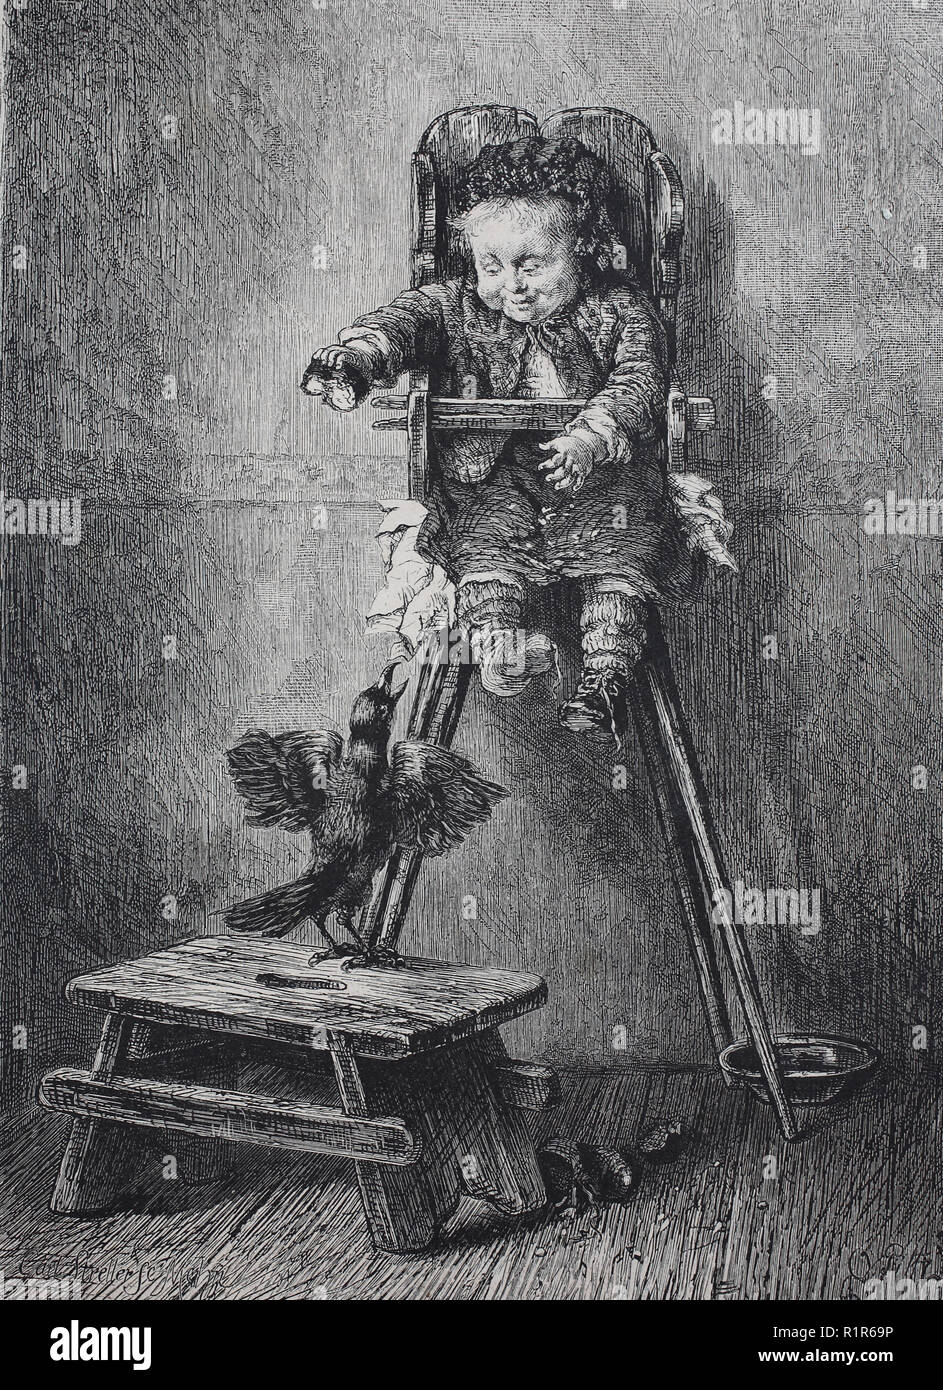 Digital verbesserte Reproduktion, naughty boy quält ein Vogel, original Drucken aus dem Jahr 1880 Stockfoto